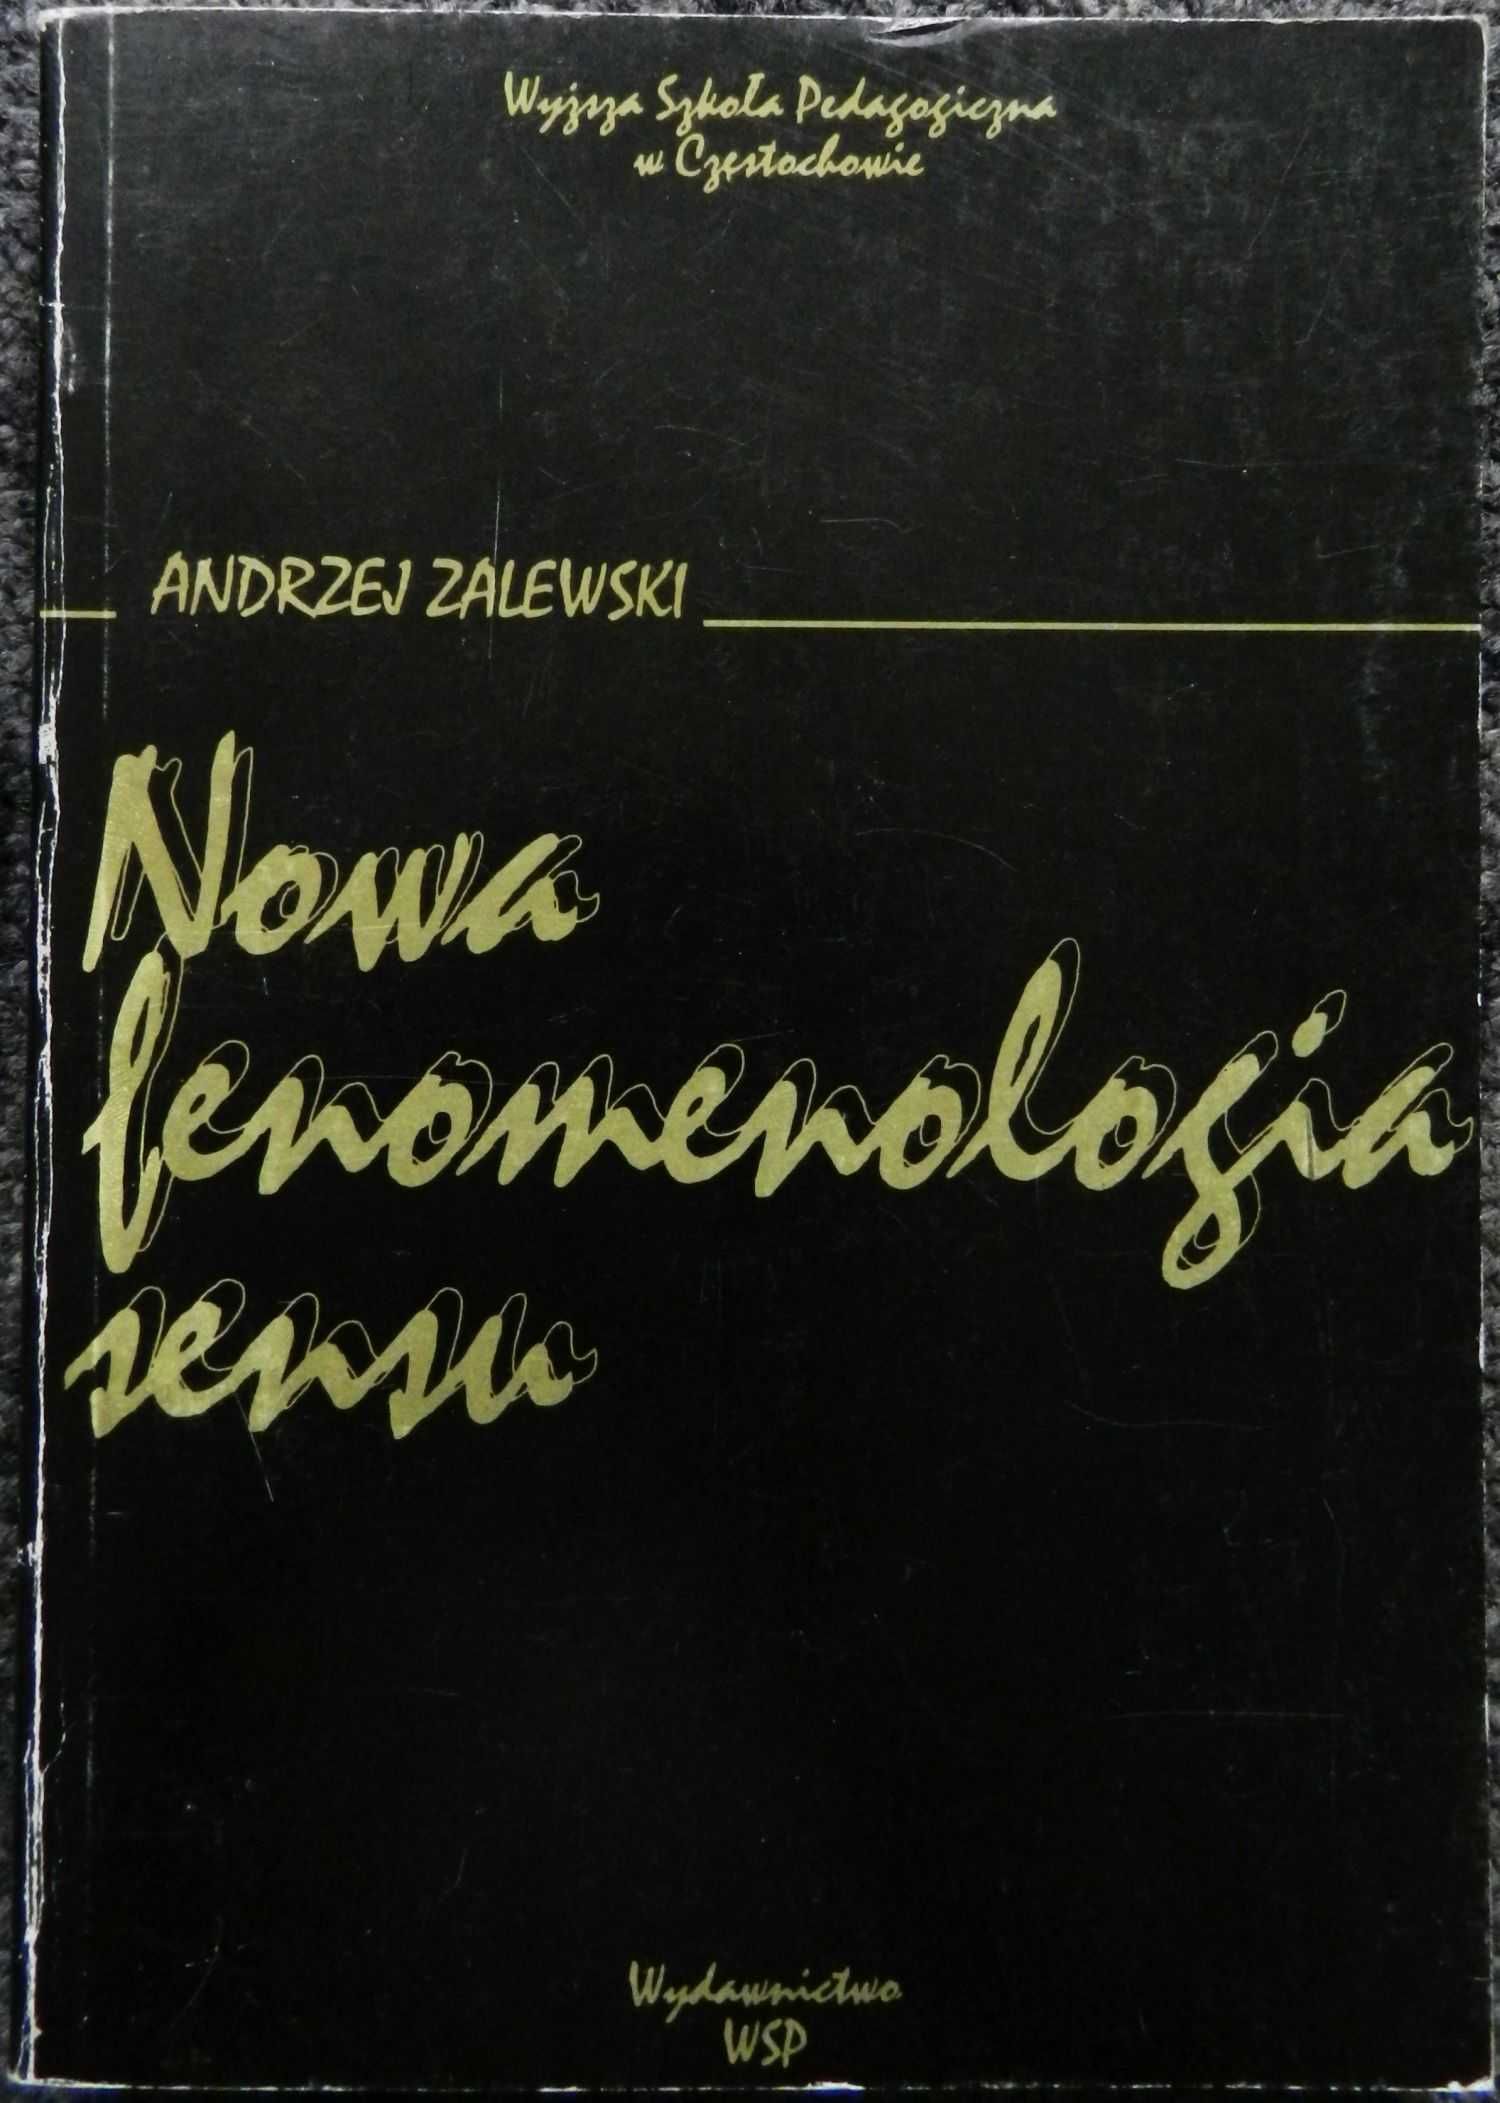 Zalewski Andrzej - Nowa fenomenologia sensu, WSP w Częstochowie